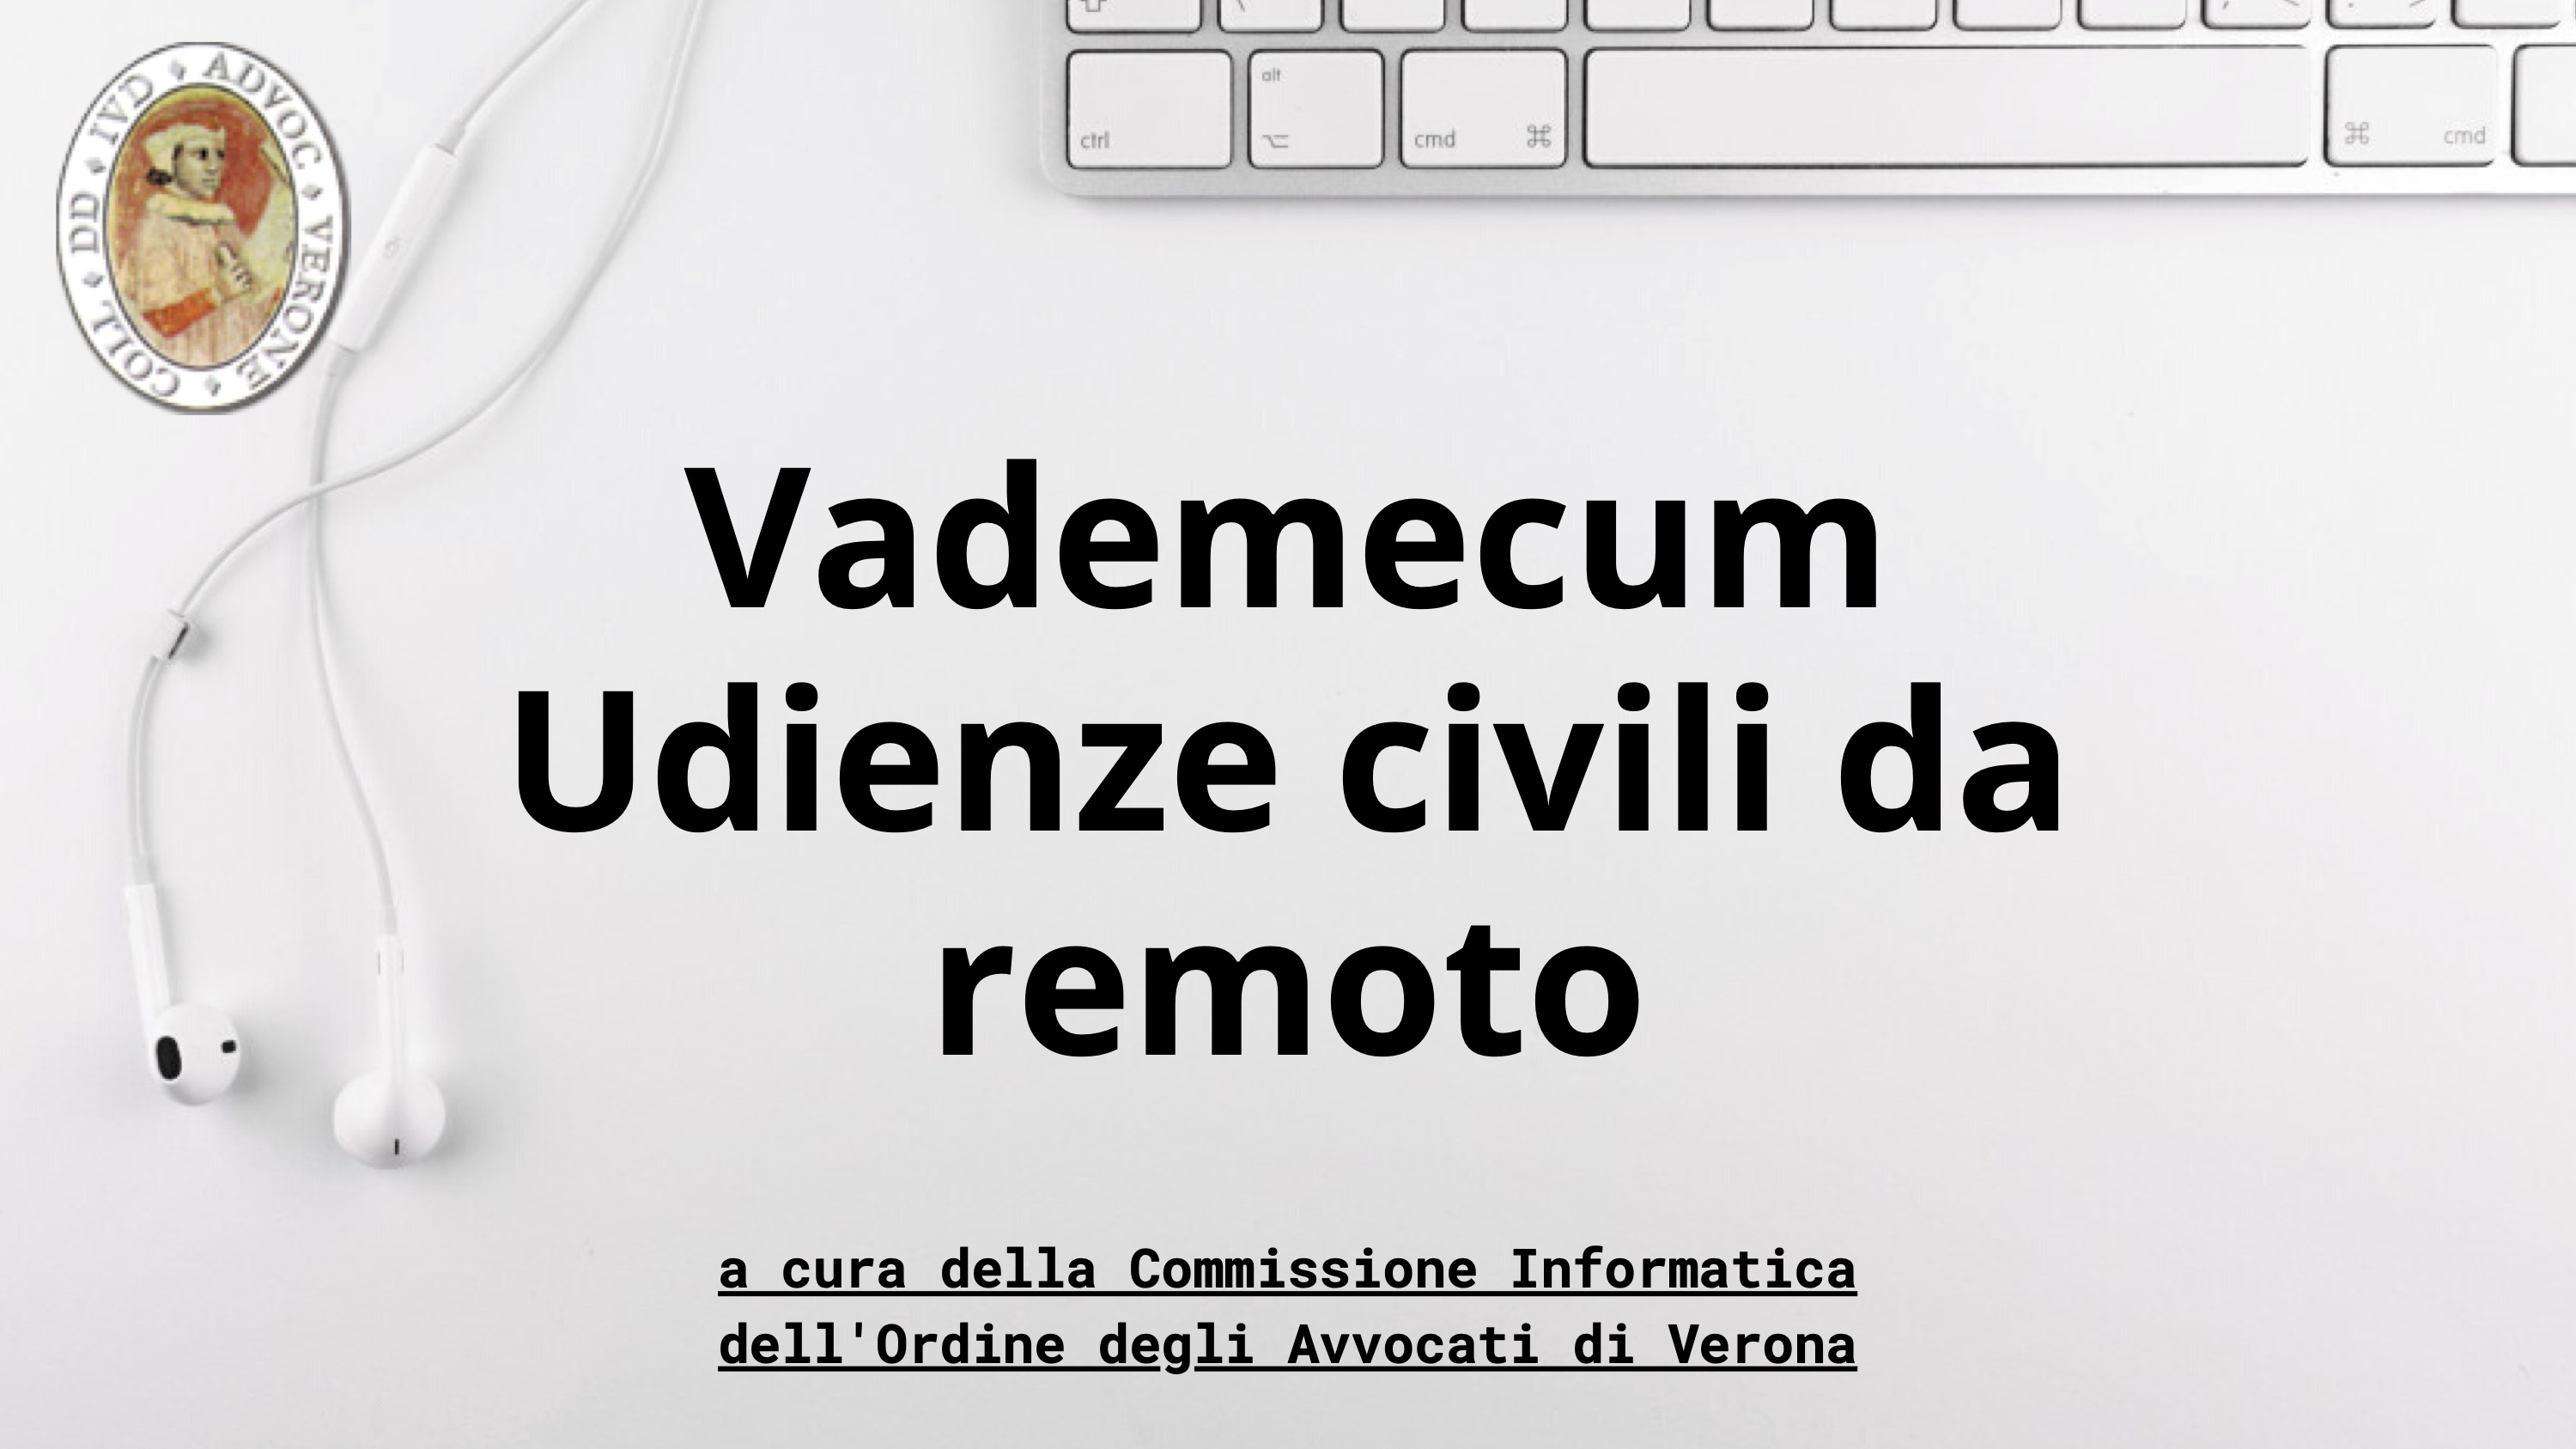 Vademecum Udienze da Remoto a cura della Commissione Informatica presso l'Ordine degli Avvocati di Verona